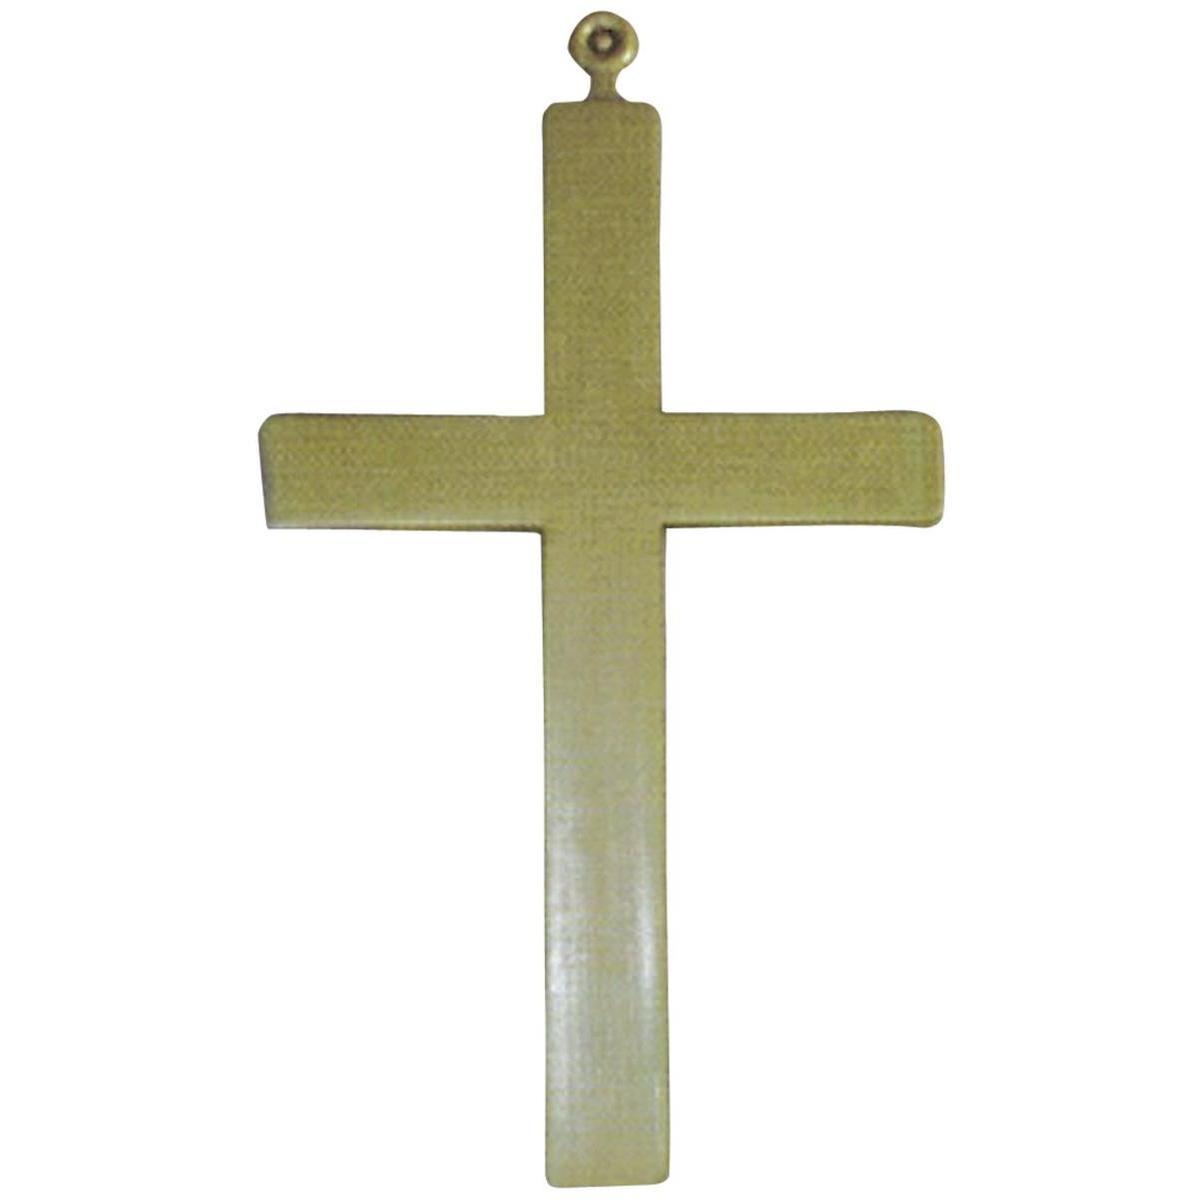 Croix de moine - L 29 x H 1 x l 15 cm - Or - PTIT CLOWN